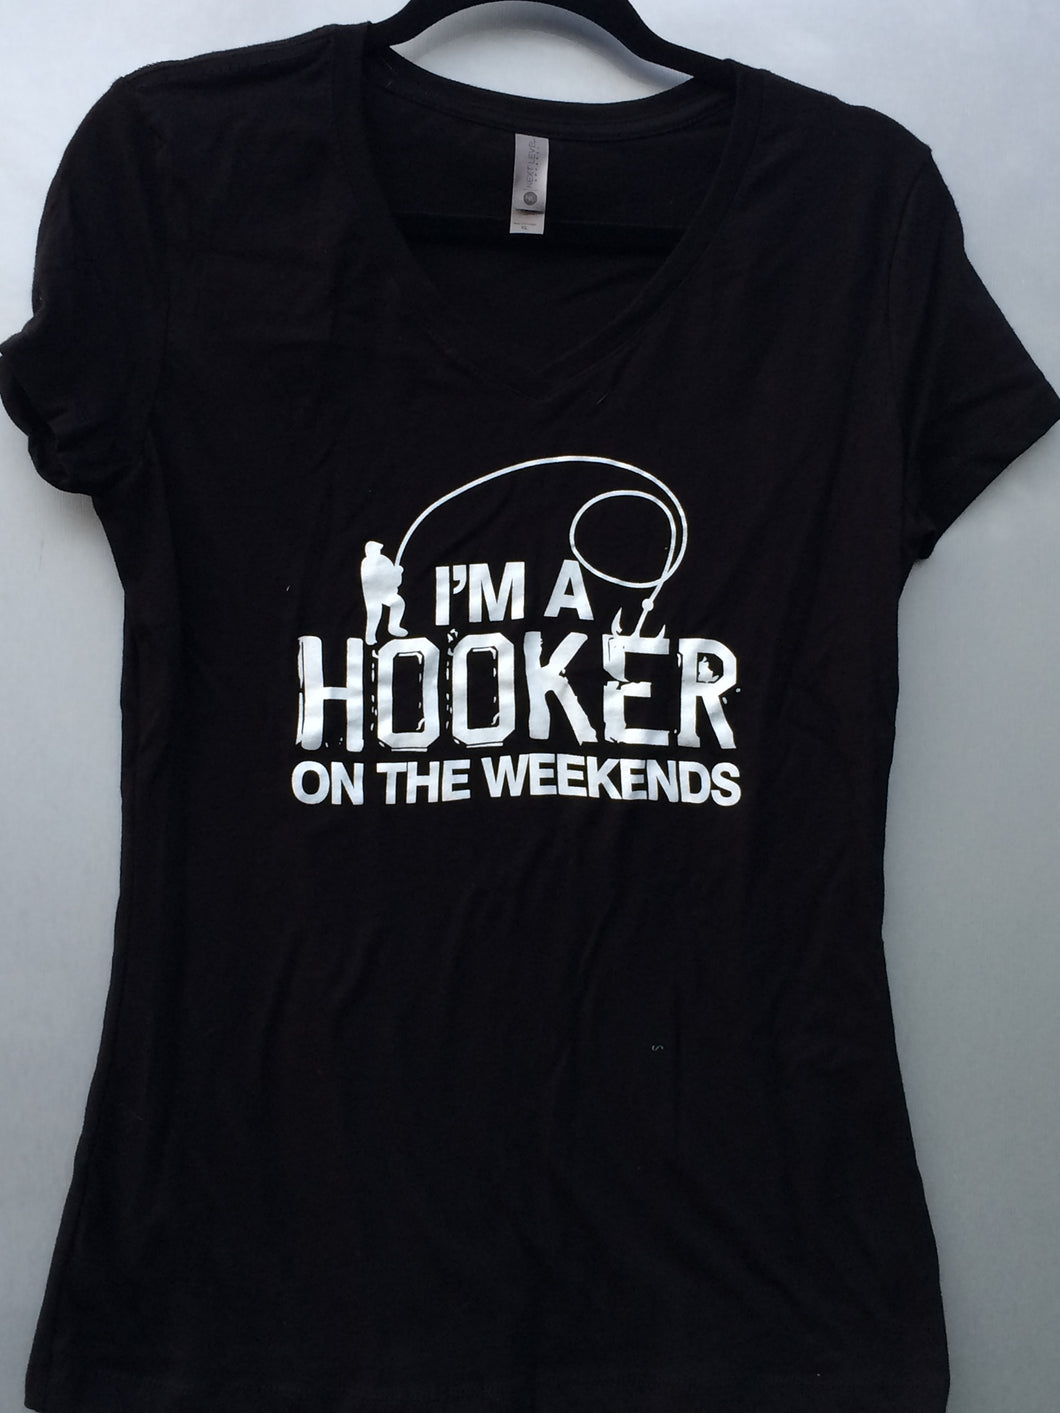 Hooker tee shirt